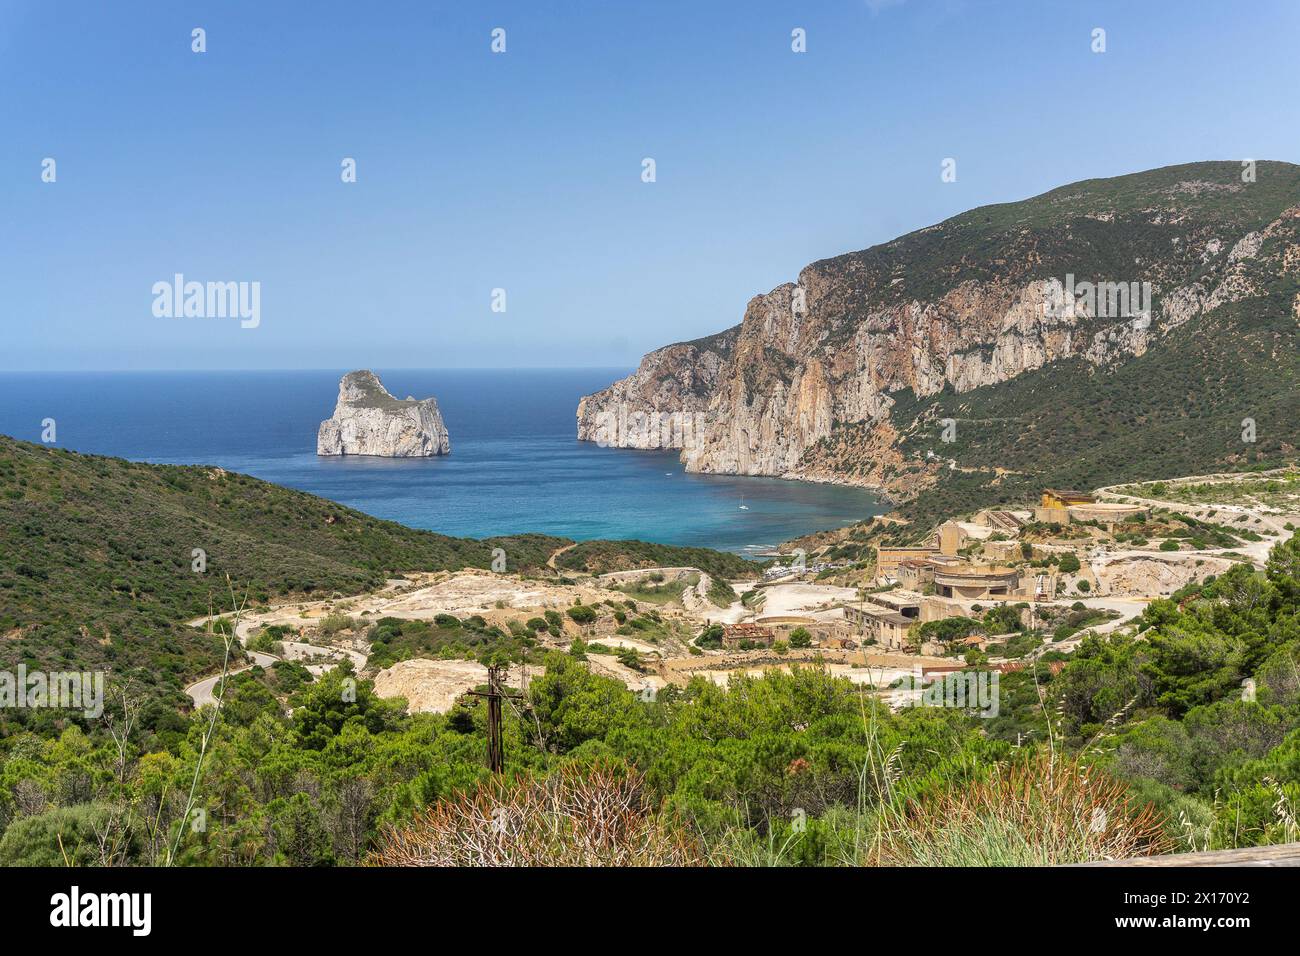 Miniera di Masua in Sardegna, sullo sfondo il Pan di Zucchero e a fianco Porto Flavia Stock Photo